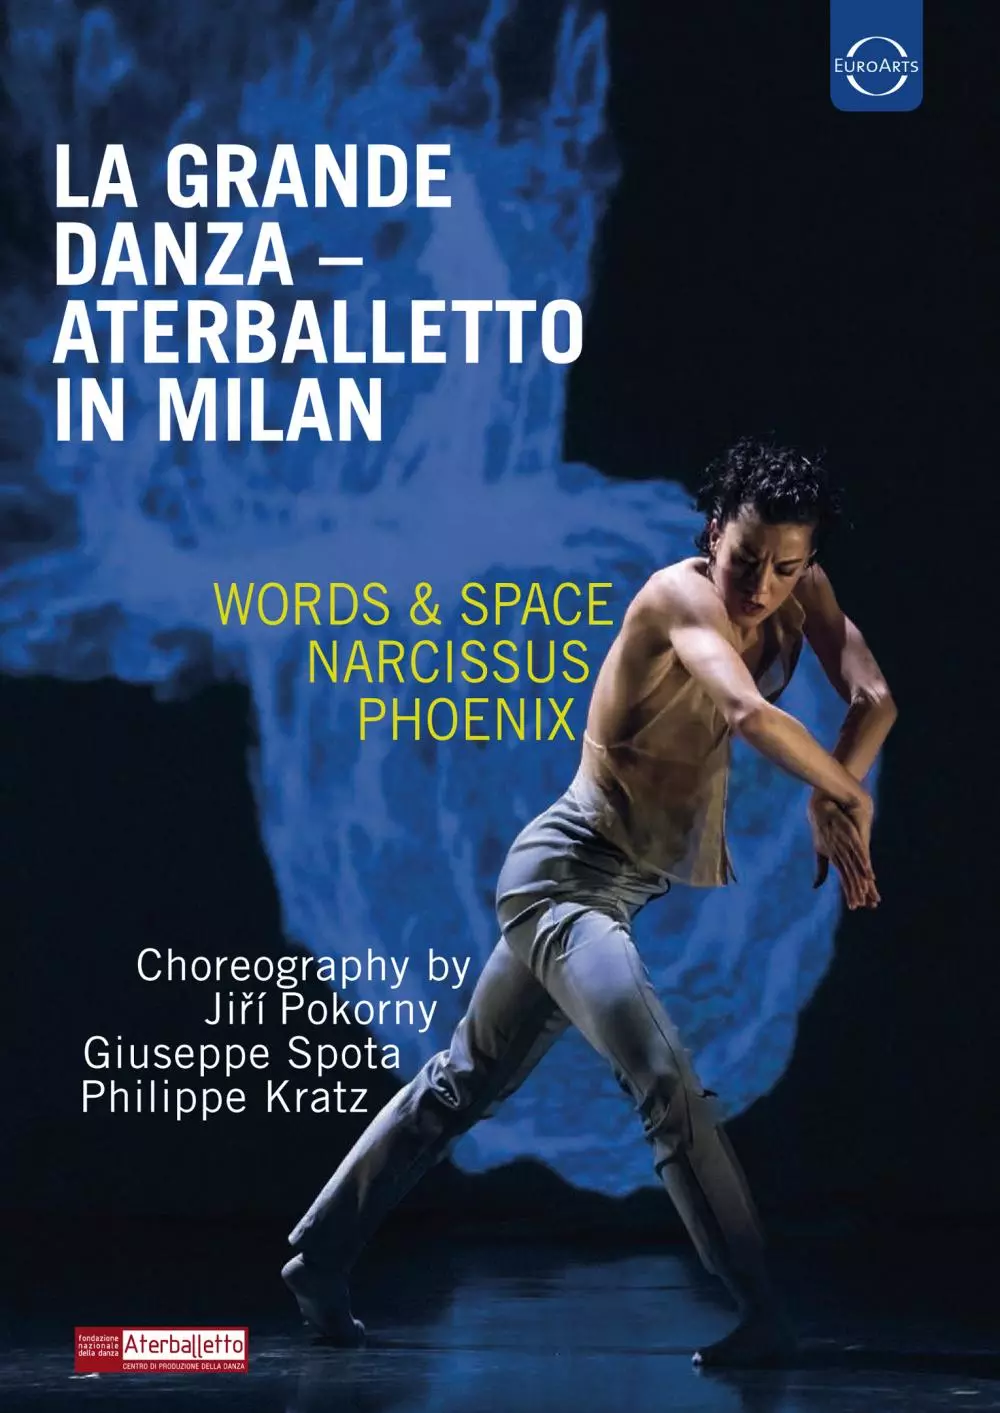 La Grande Danza: Aterballetto in Milan